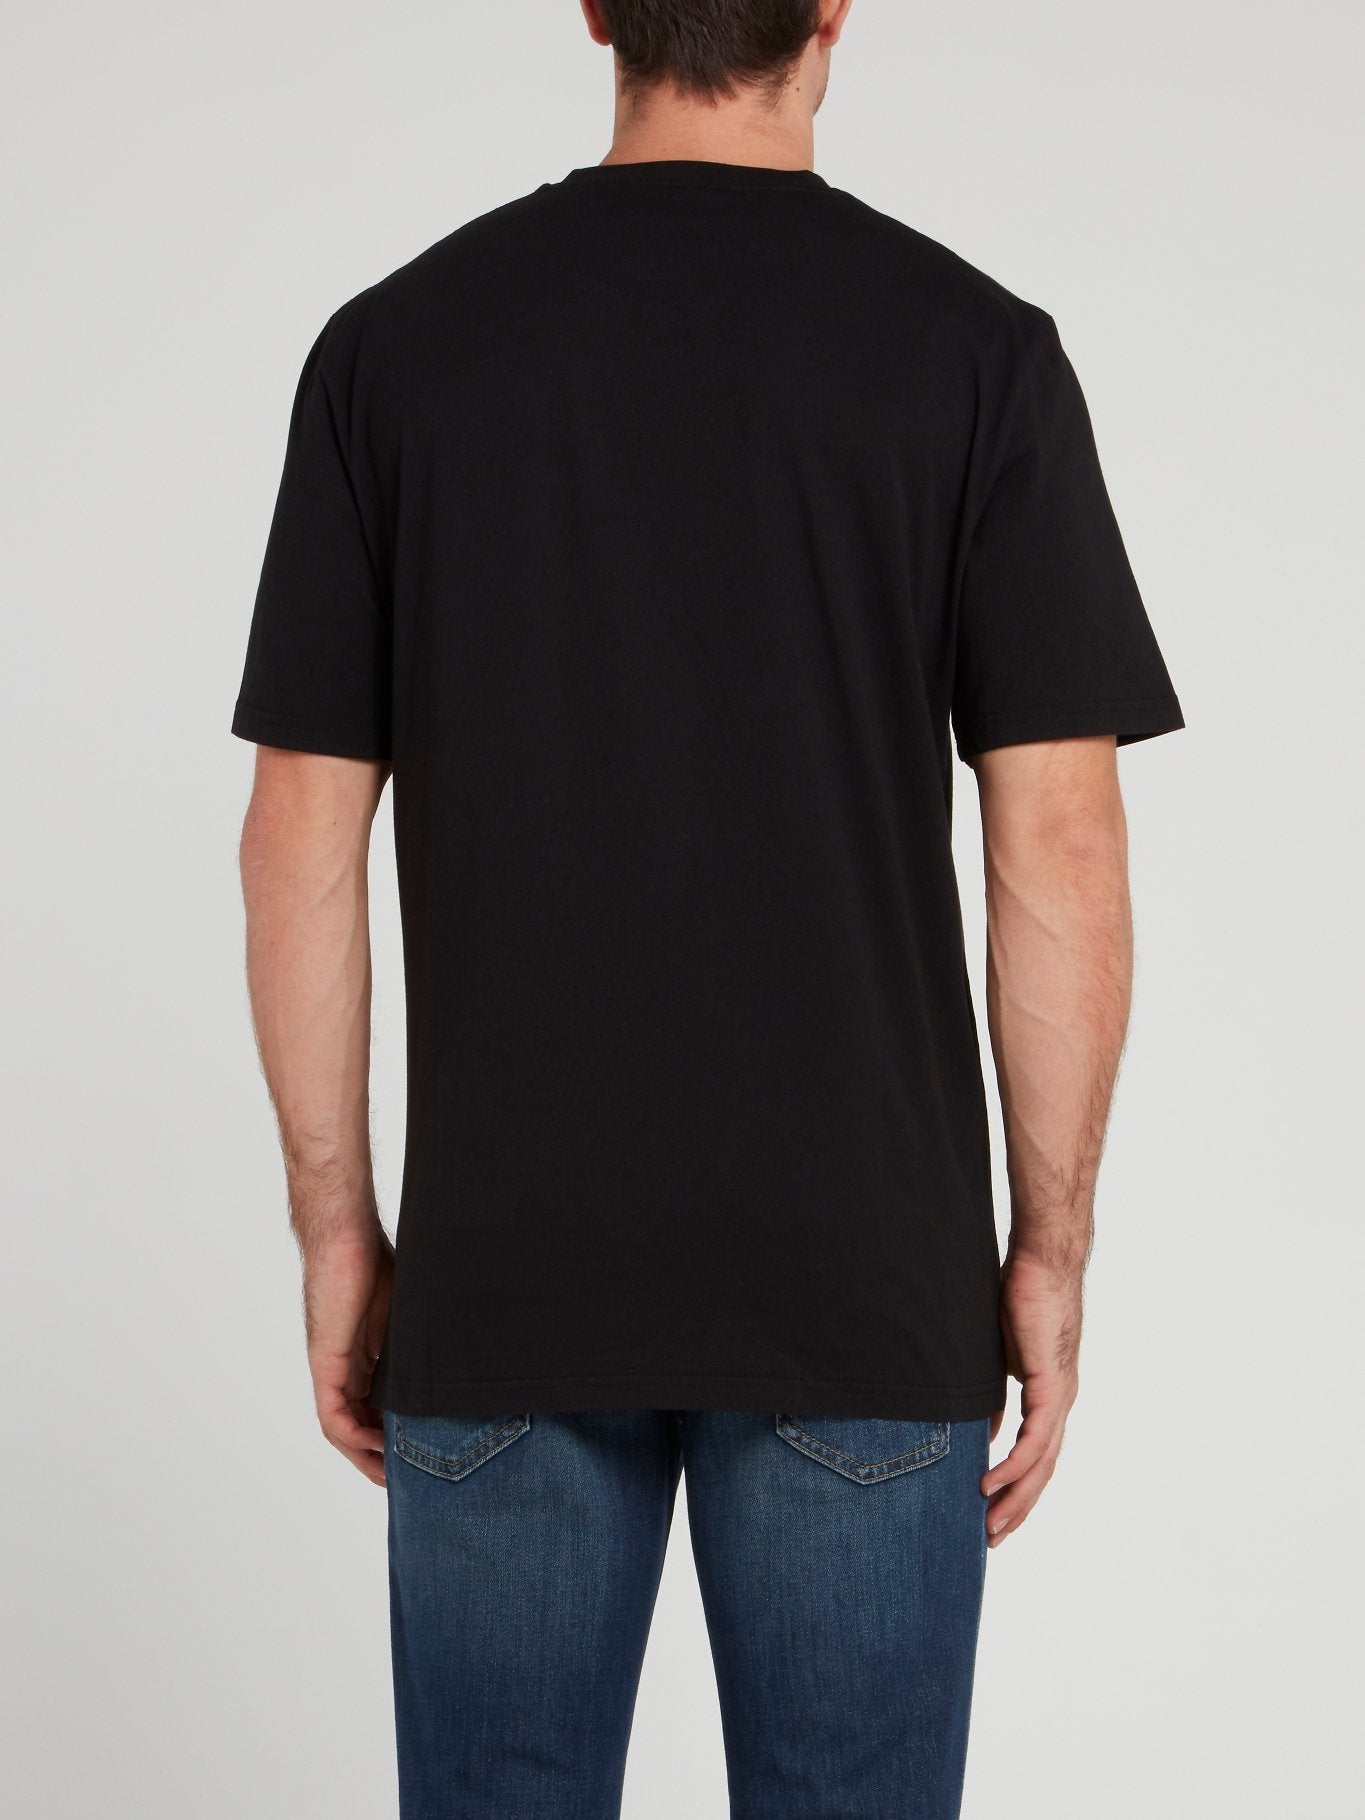 Черная футболка с рукавами до локтя и рисунком